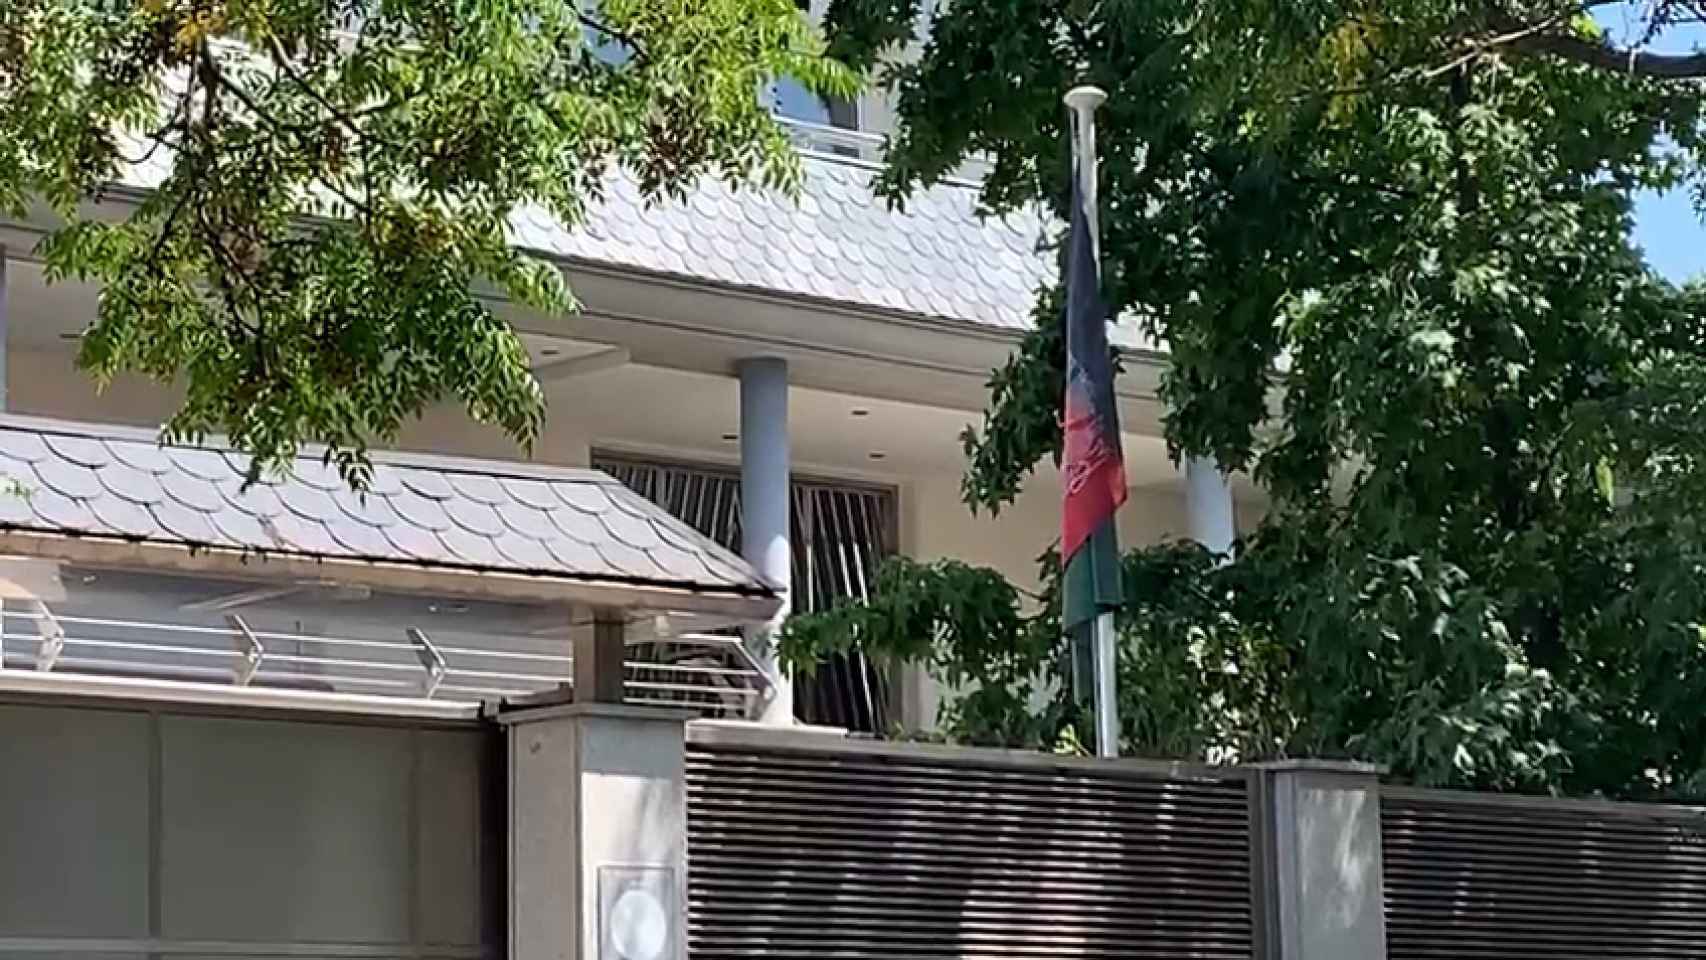 La bandera tricolor afgana, colgada en la embajada.